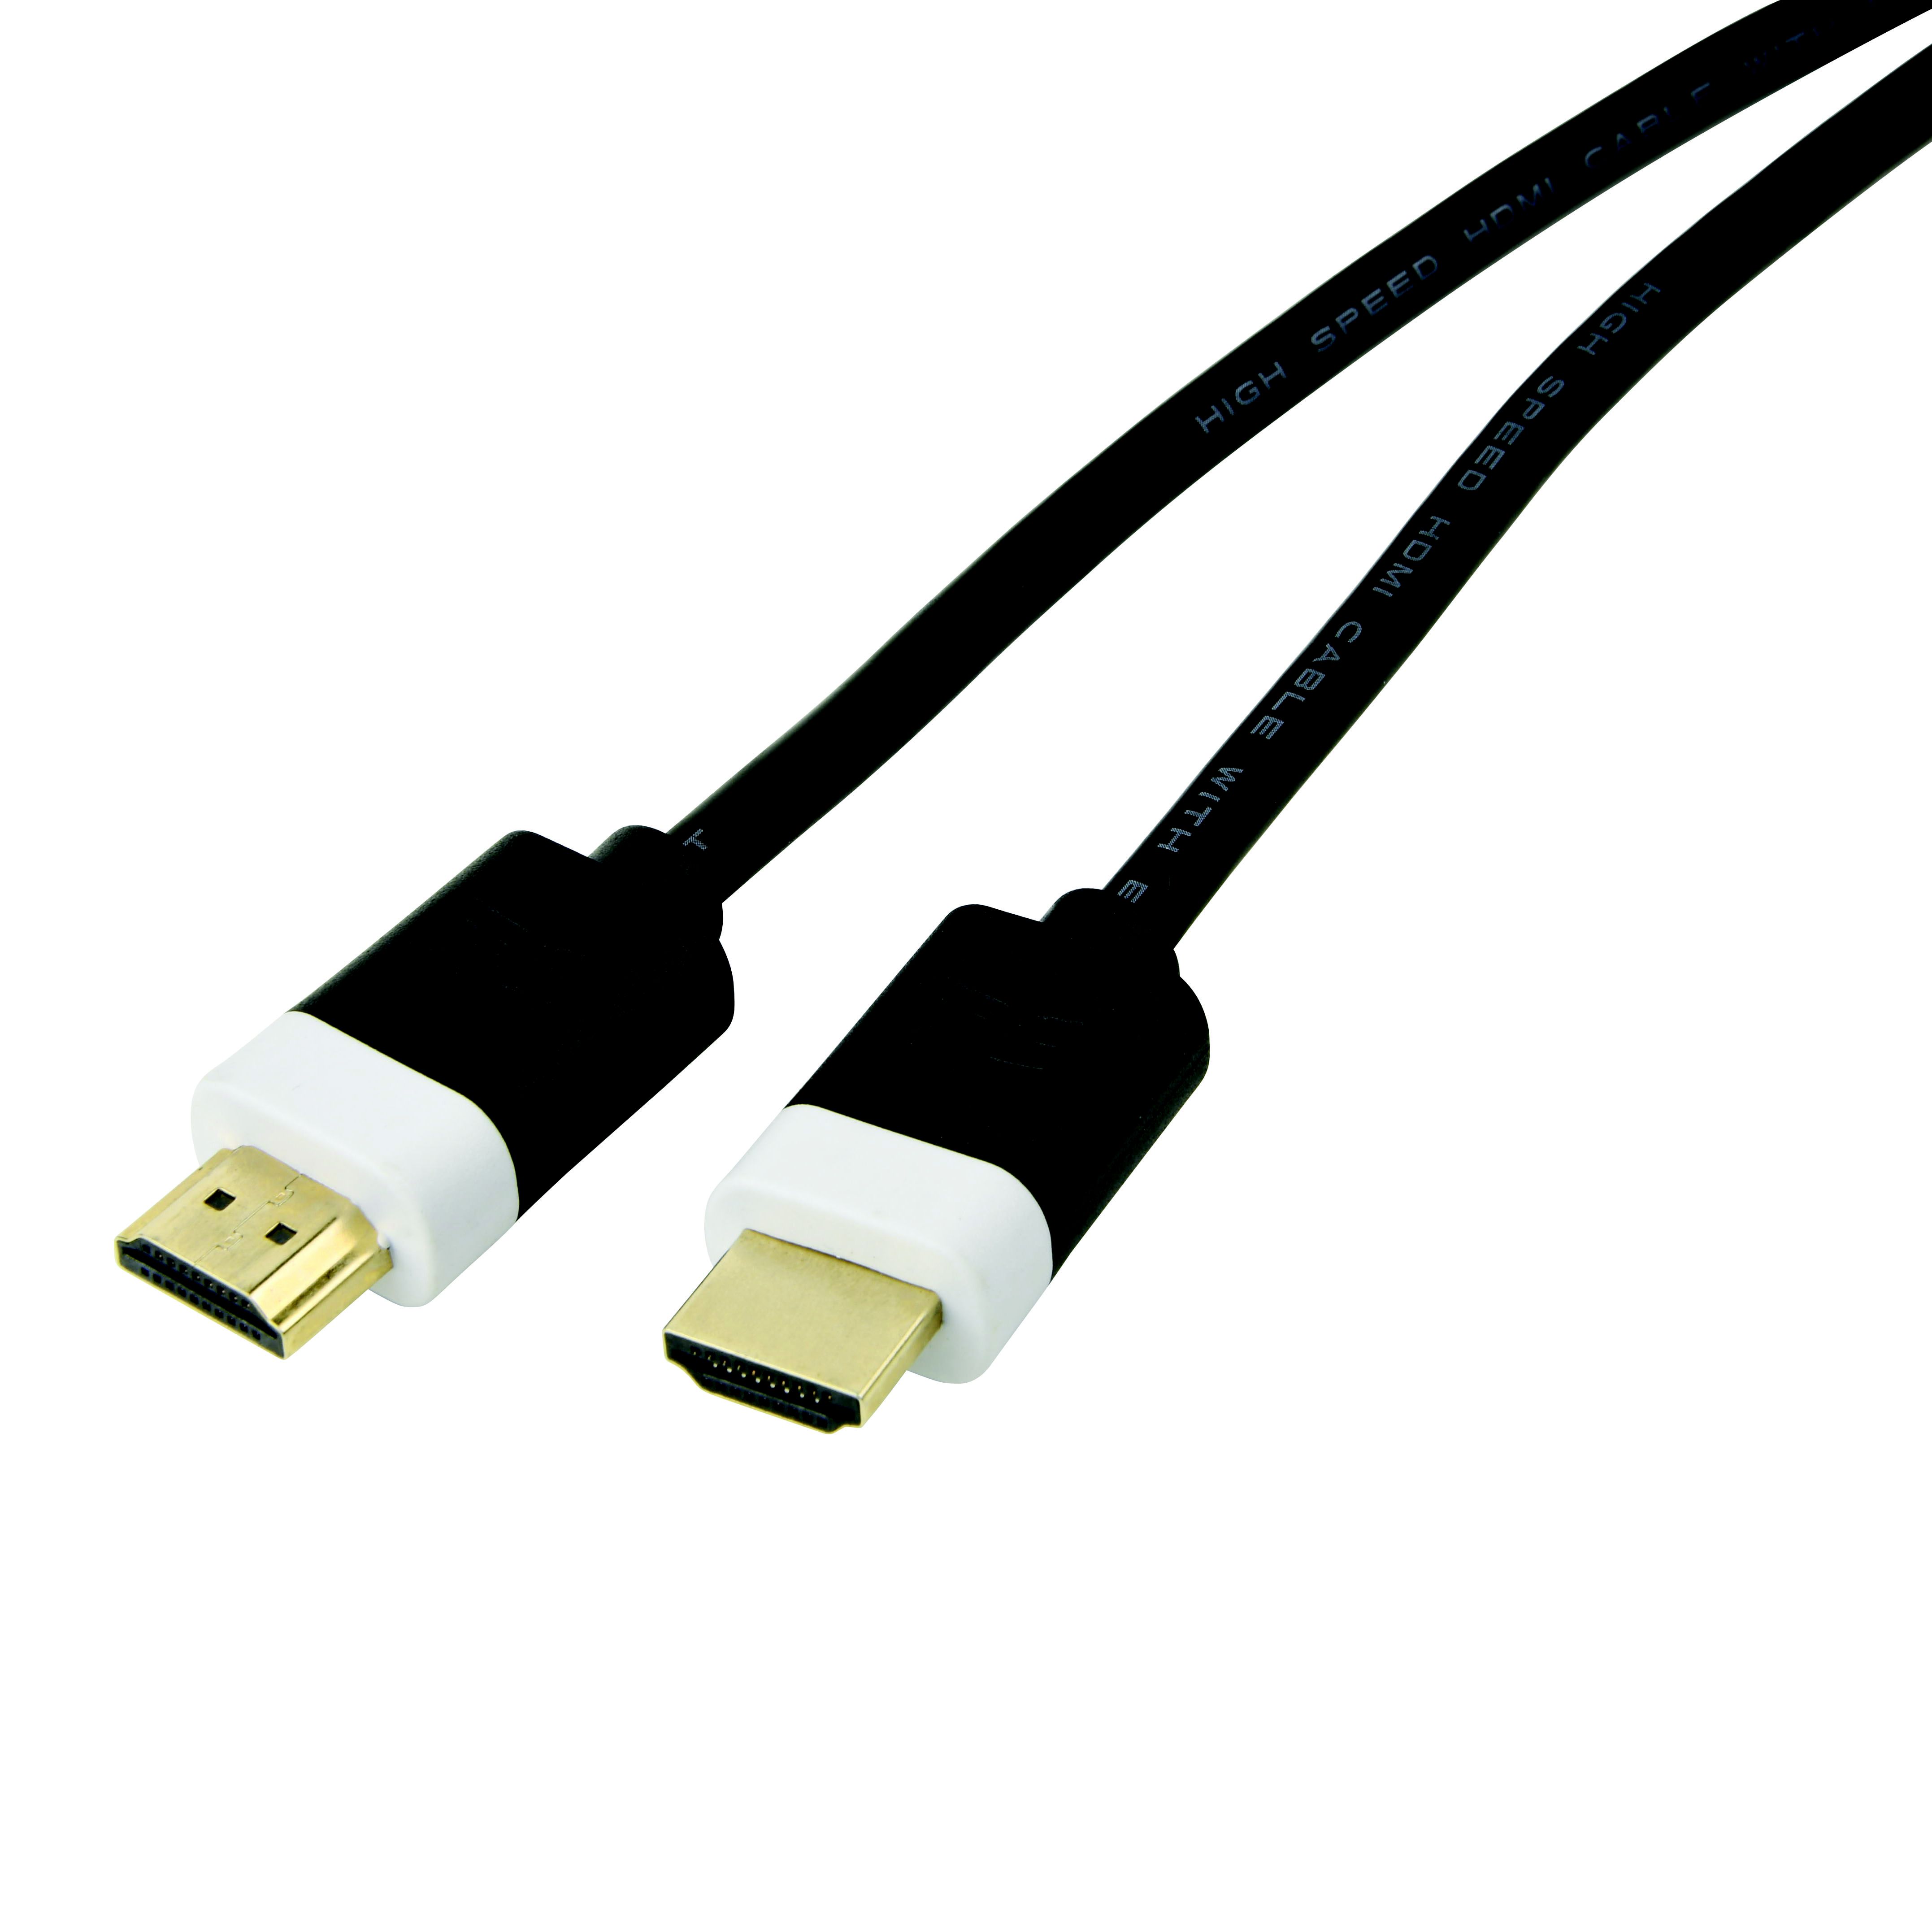 Cable HDMI - HDMI 5m - Avisual SHOP